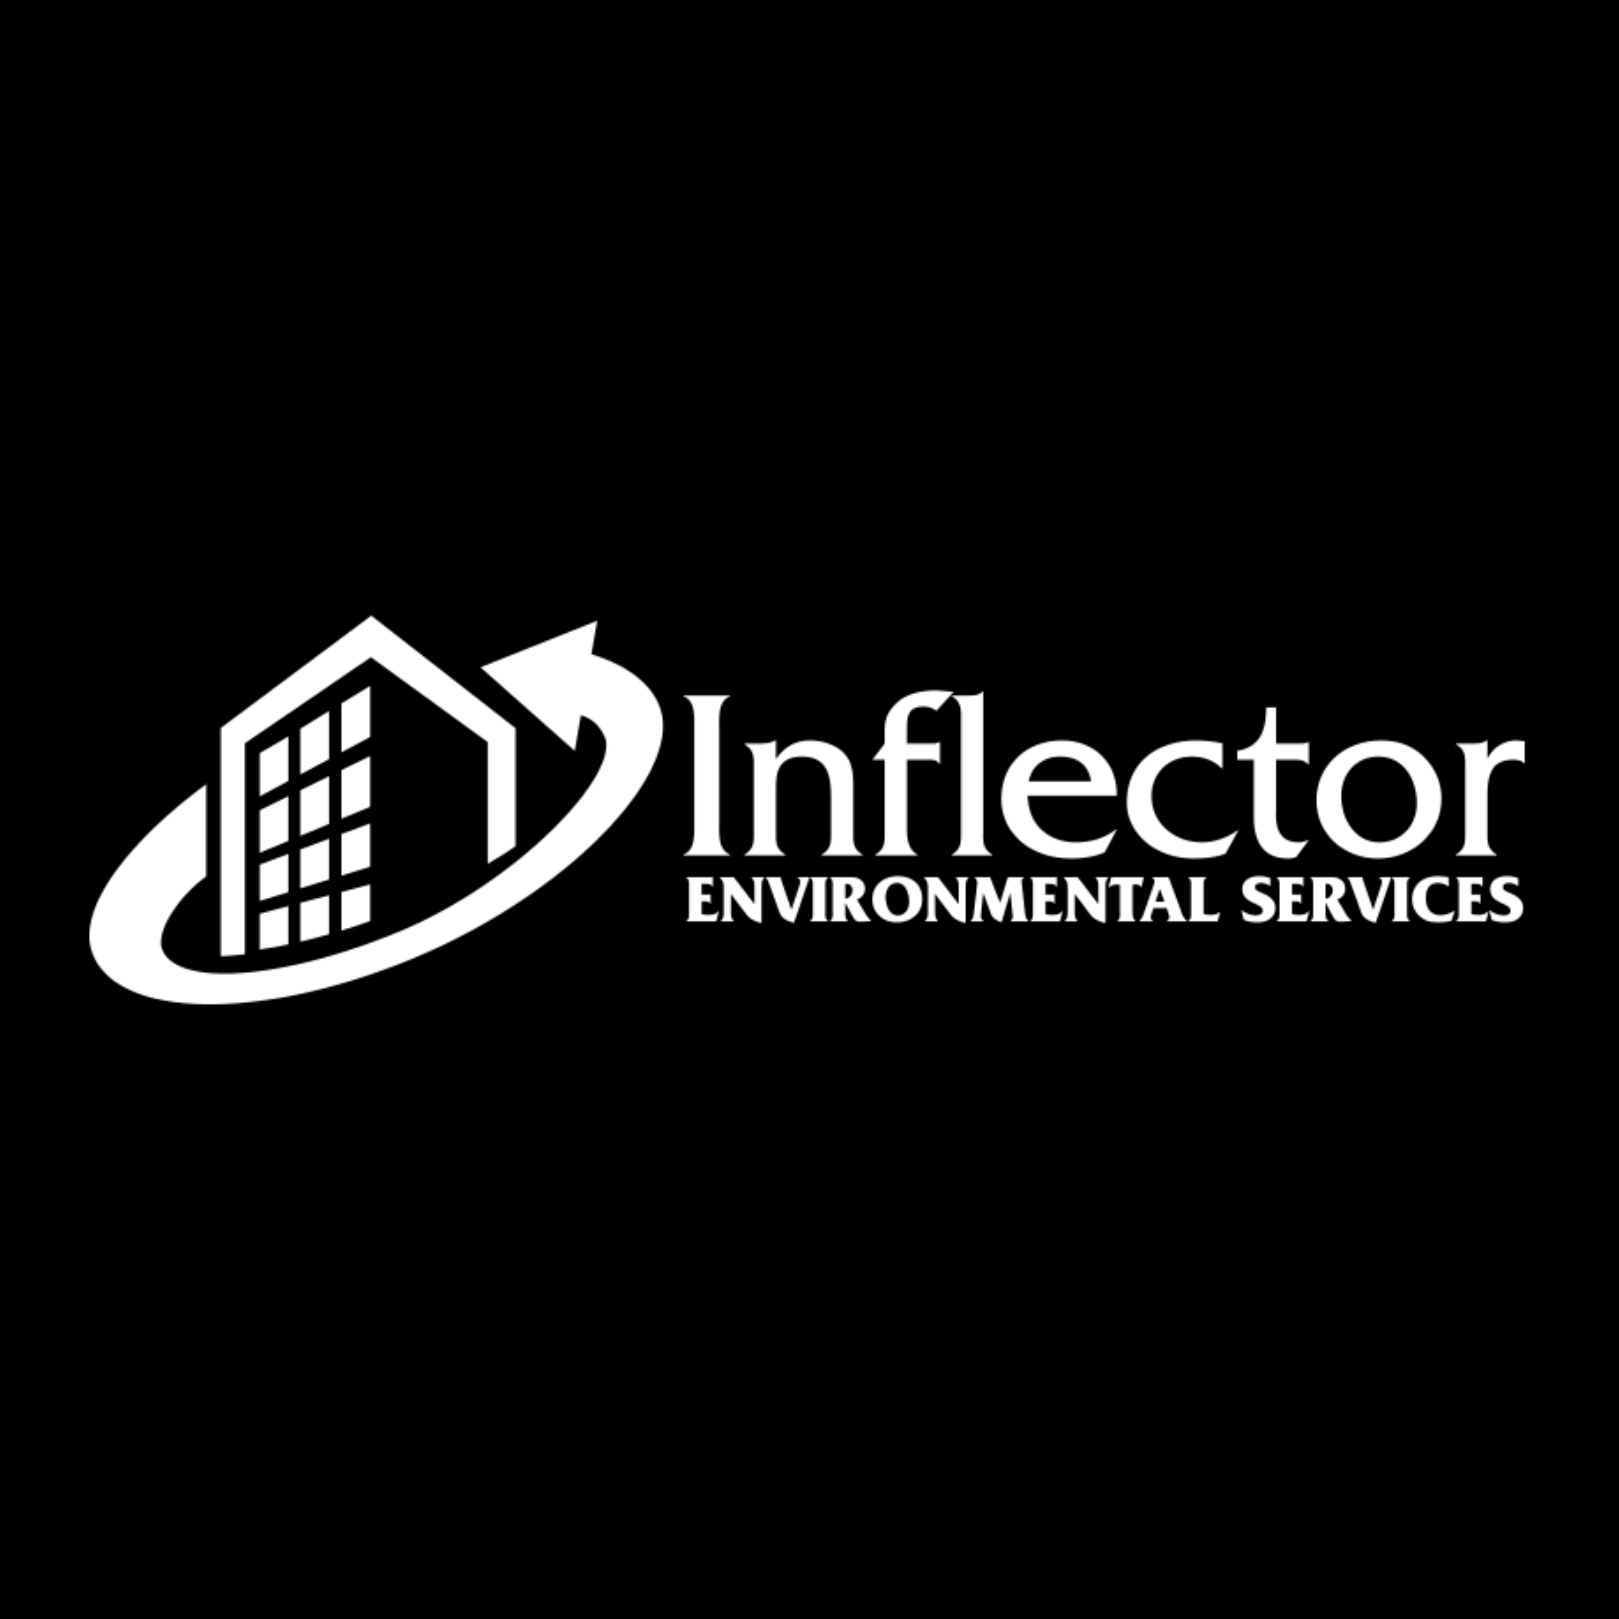 Inflector Environmental Services - Toronto'